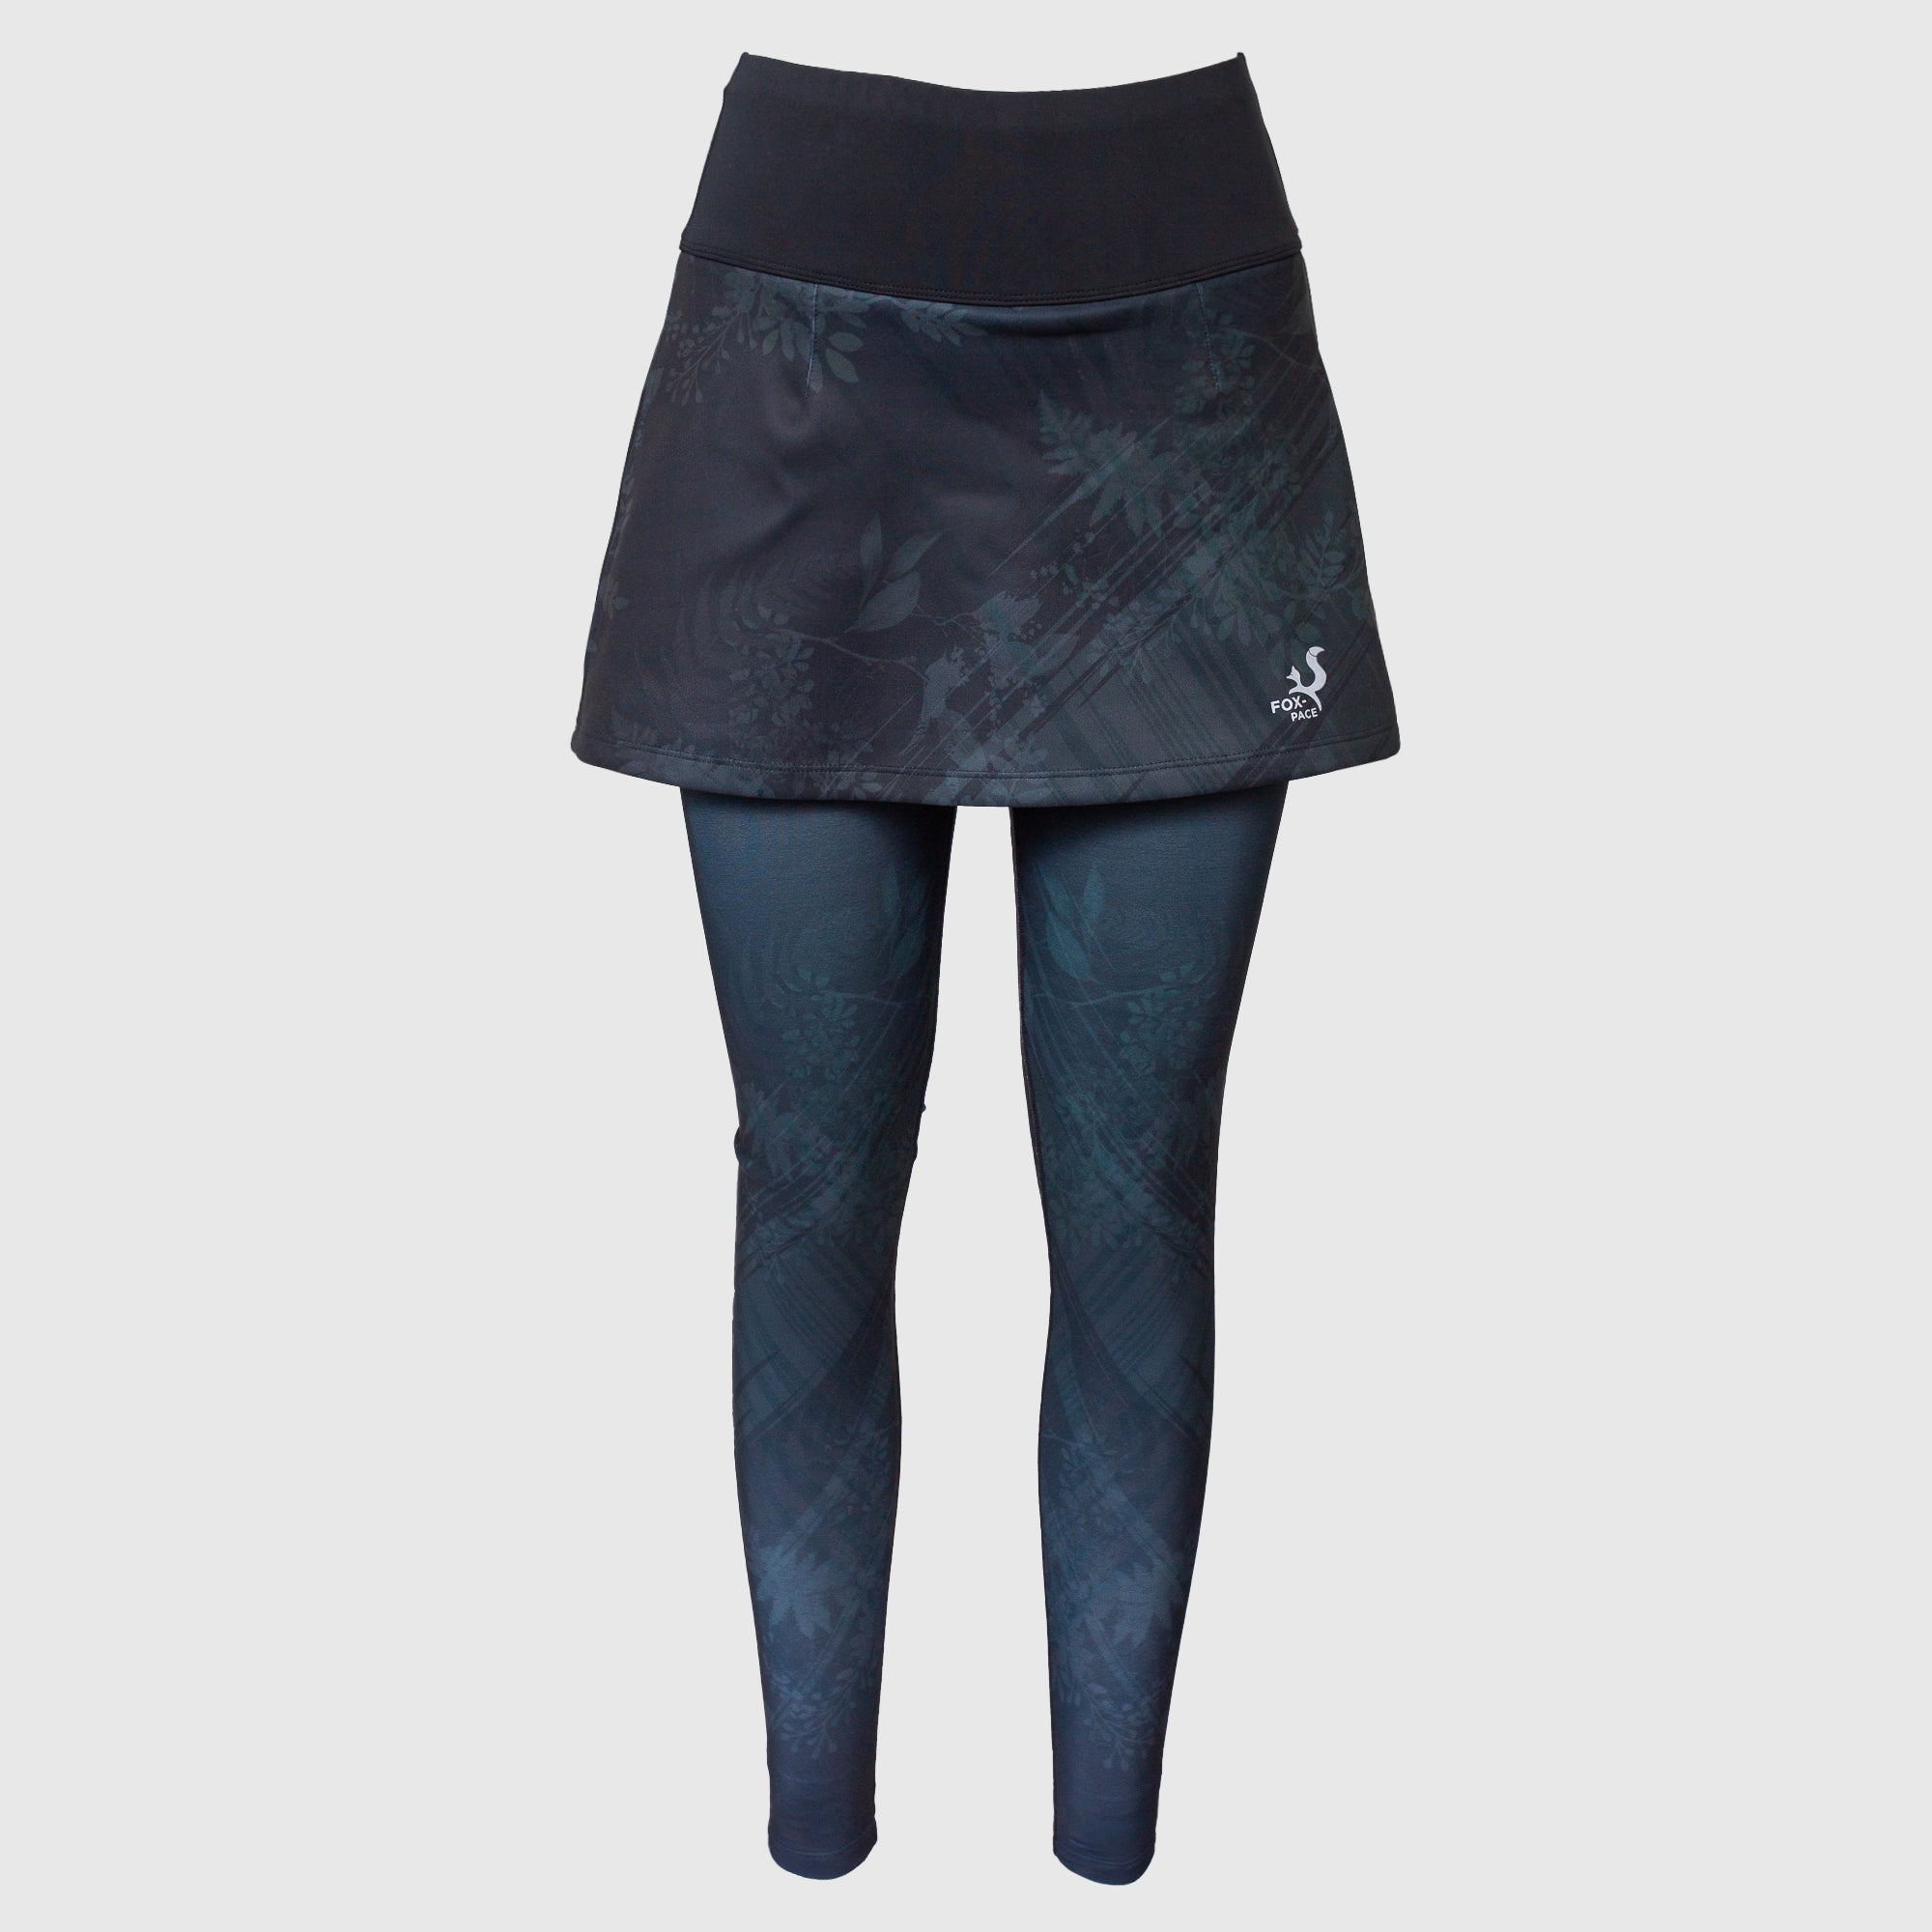 Ultrawarm Trendsetter Fishskirt Short Plust Skirt Leggings